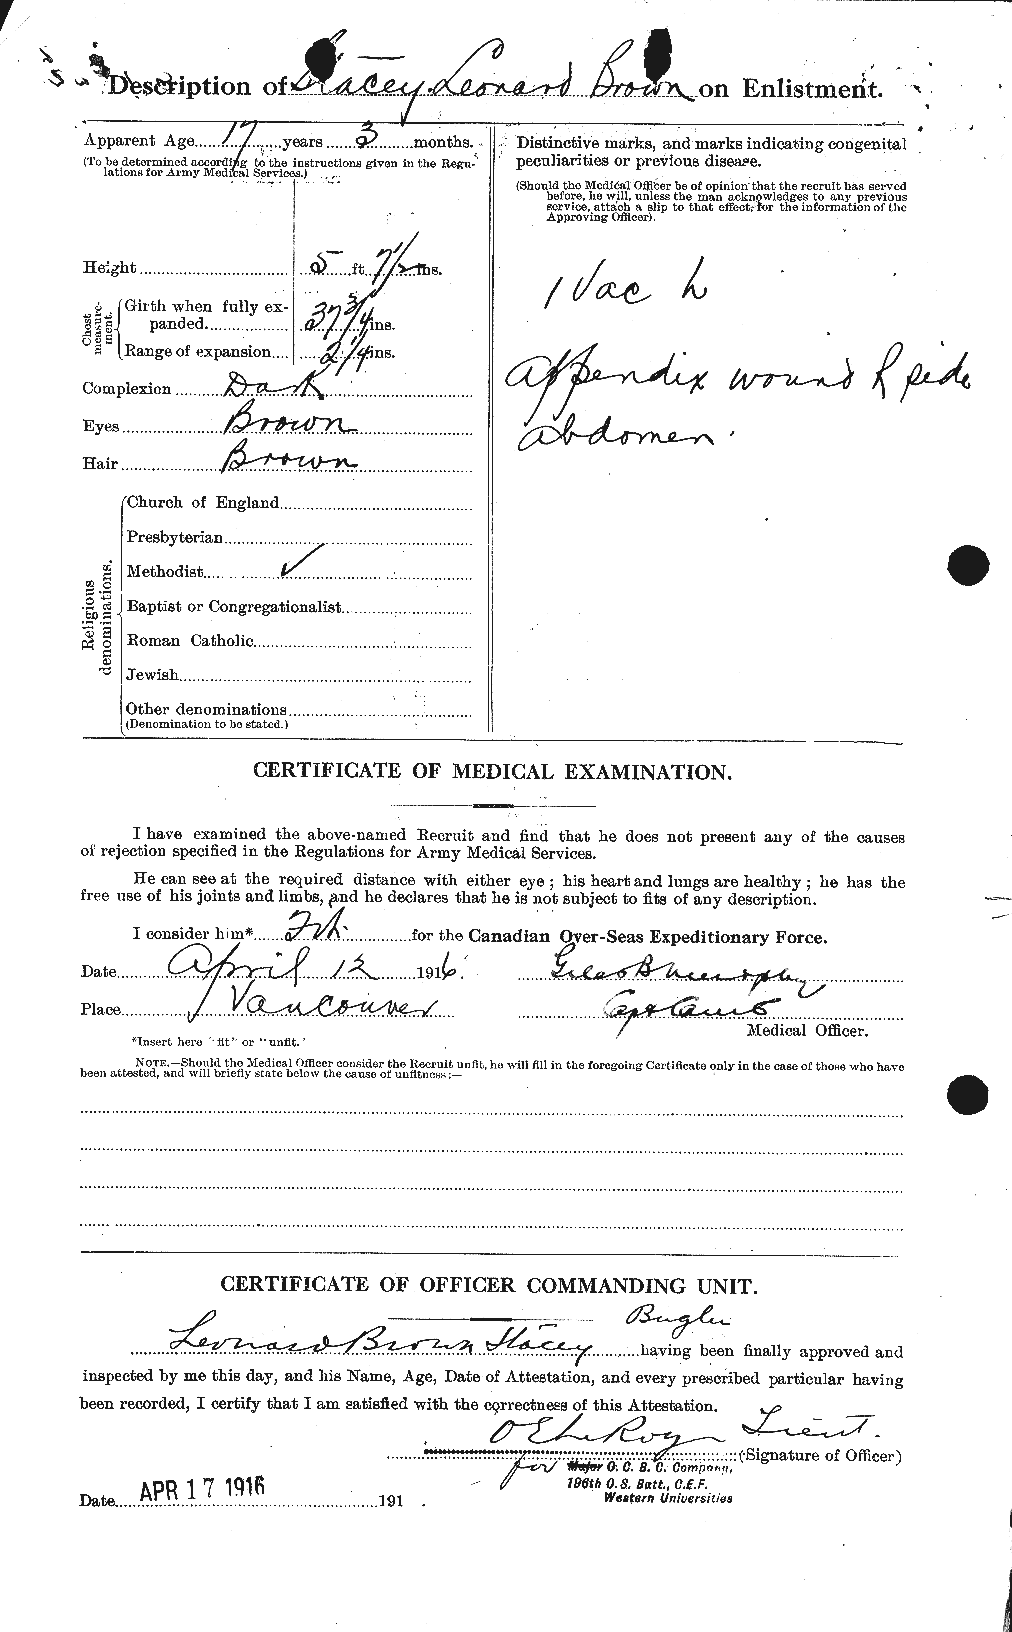 Dossiers du Personnel de la Première Guerre mondiale - CEC 621500b